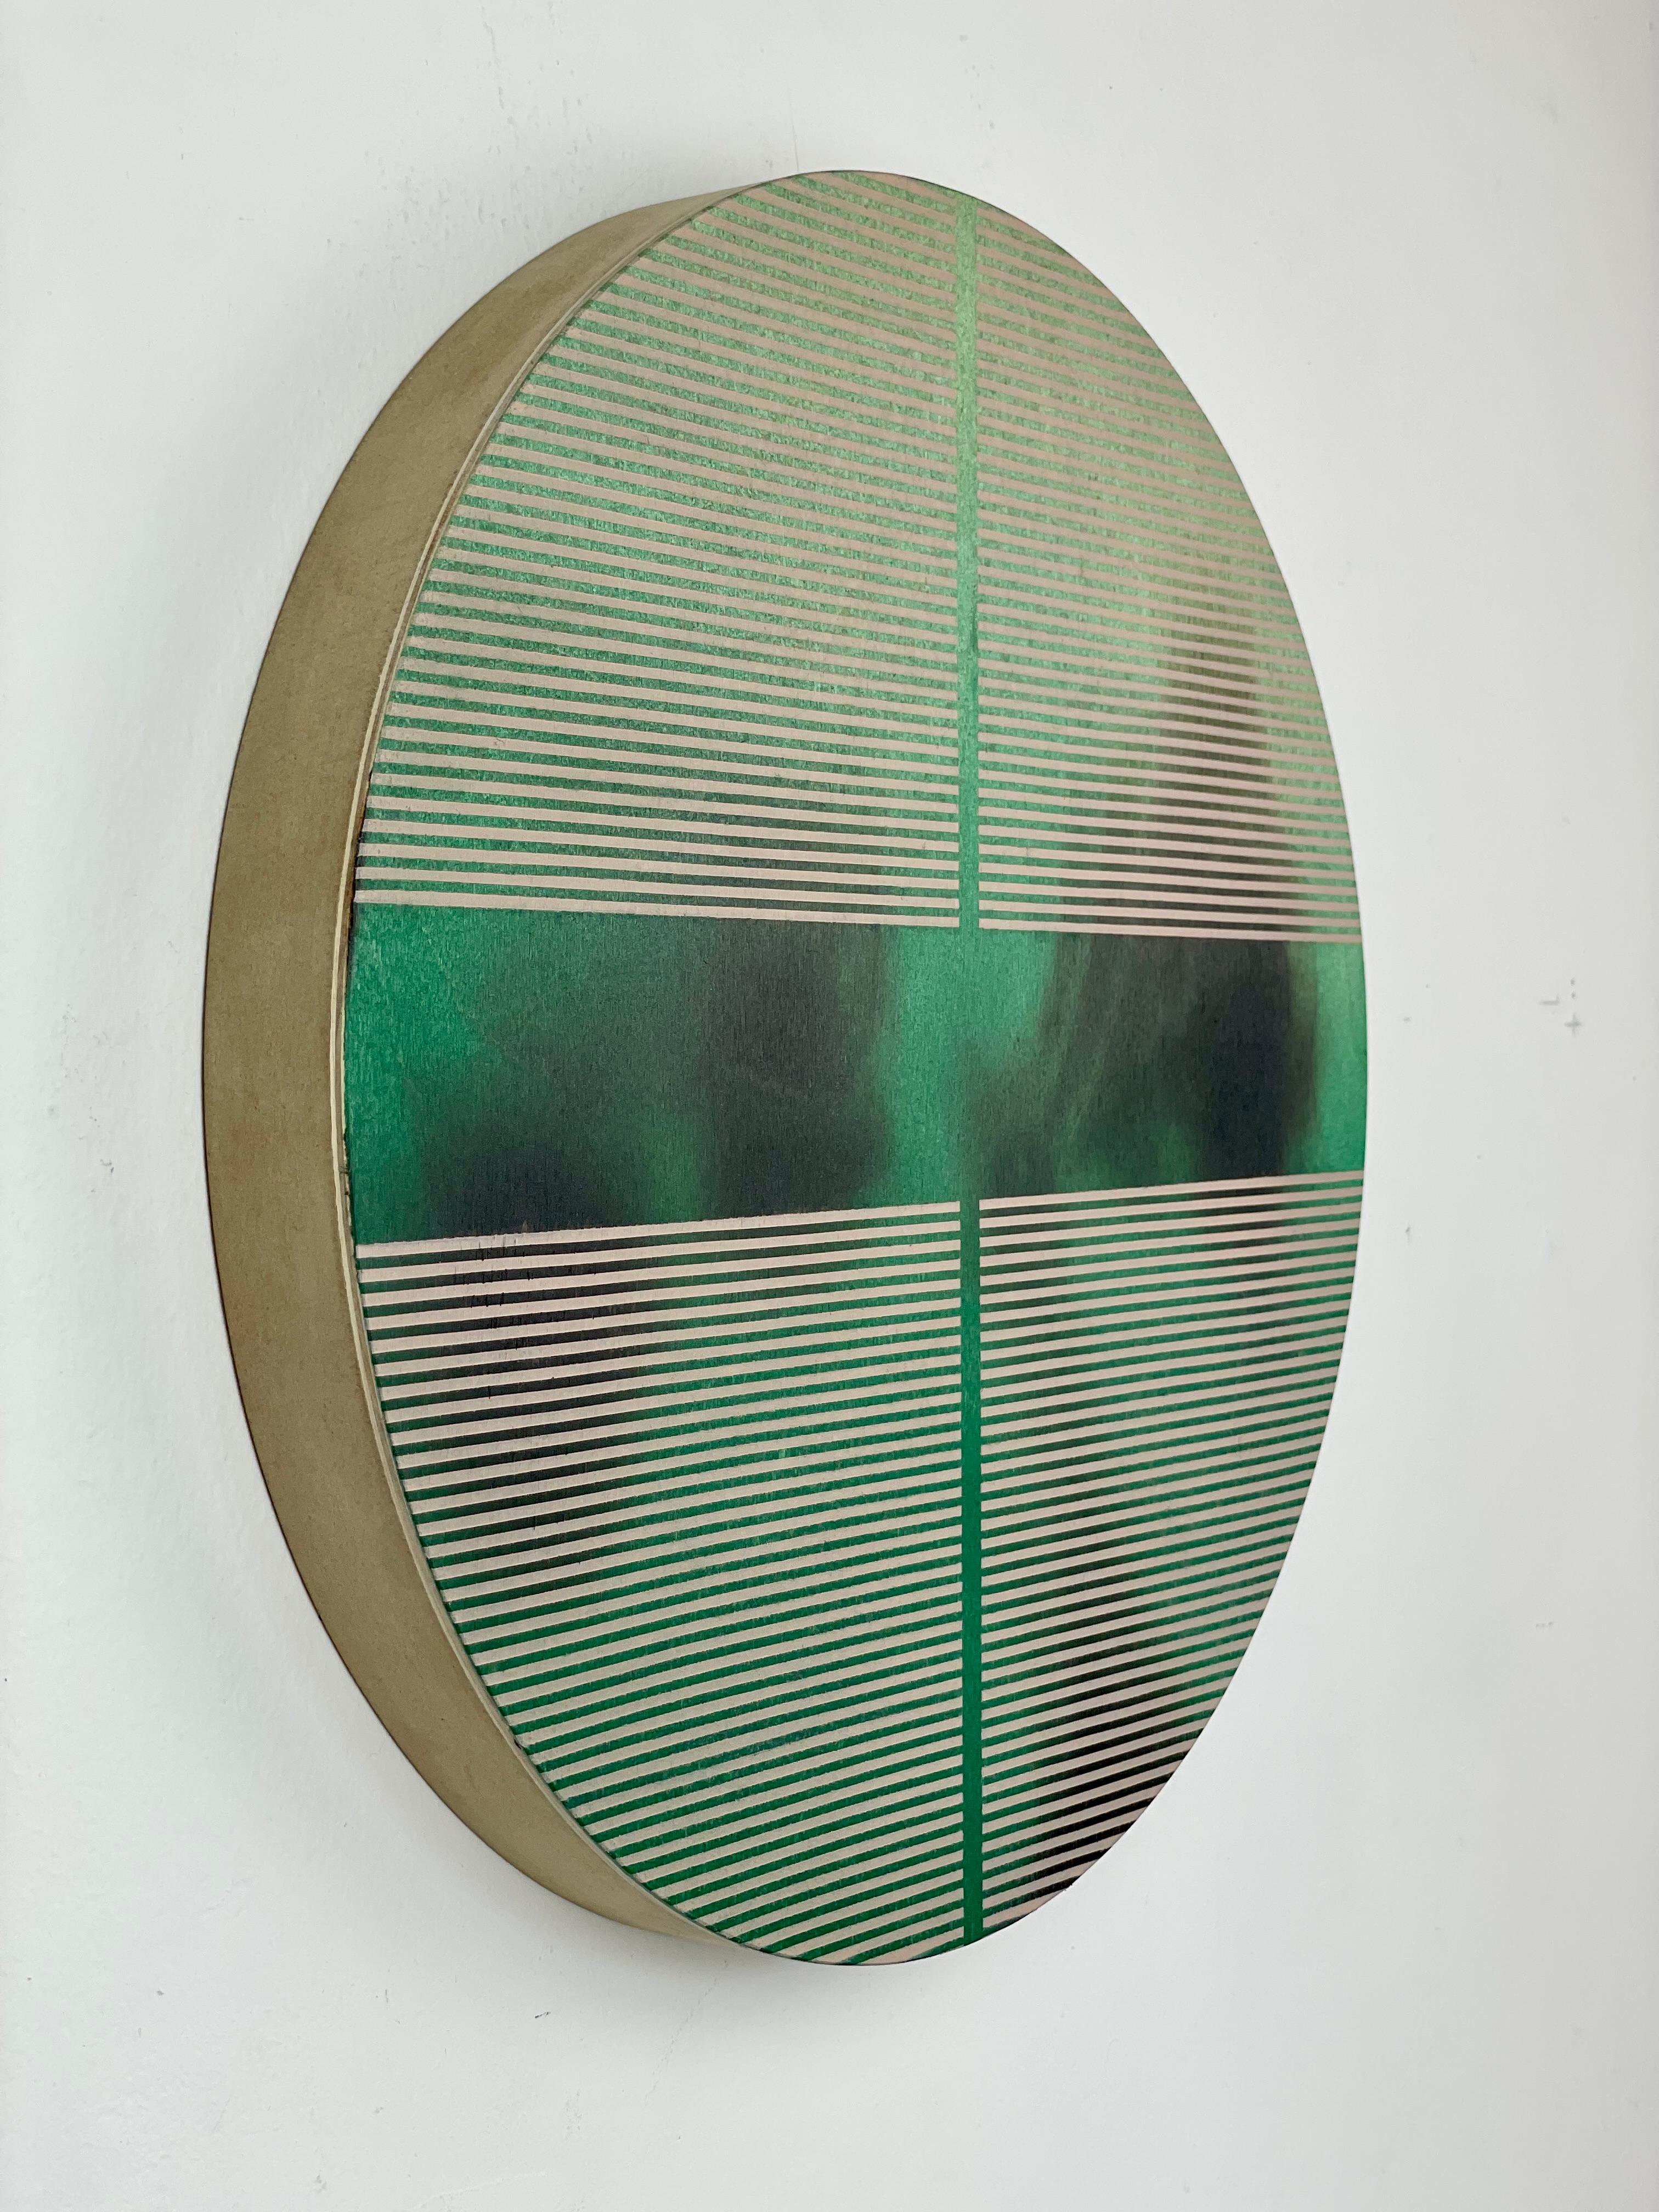 Smaragdgrüne Pille (minimalistisches rundes Gemälde auf Holz dopamine Kunst) (Geometrische Abstraktion), Mixed Media Art, von Melisa Taylor Metzger